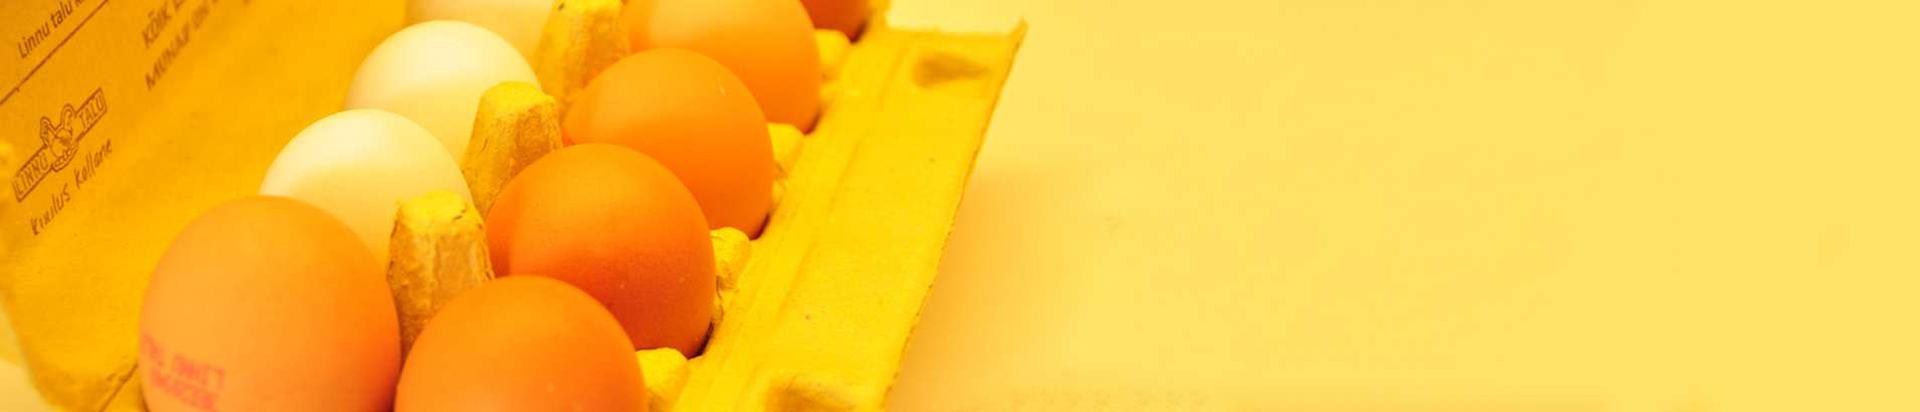 Teada on, et inimesed söövad silmadega. Meie talu kanade munad on kuulsad eriti kauni kollase rebu poolest, tänu millele annavad meie munad ilusa kollaka värvitooni nii küpsetistele kui ka toitudele.